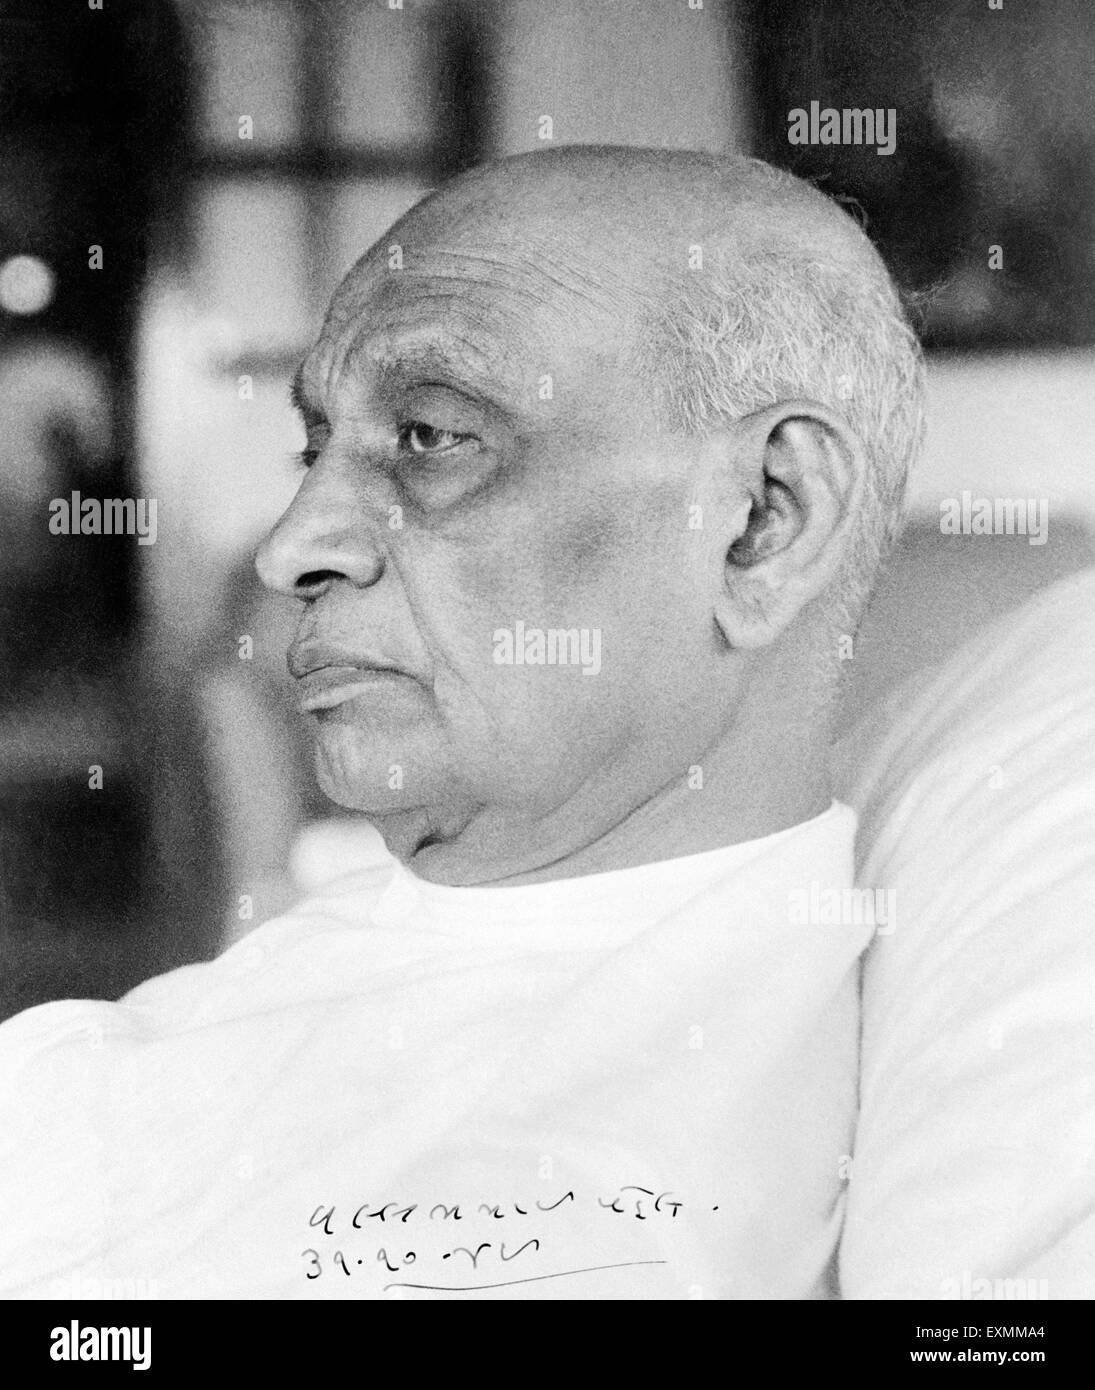 Sardar Vallabhbhai Patel signé portrait, Vallabhbhai Jhaverbhai Patel, Sardar Patel, politicien indien, 1949, Inde, Asie, ancienne image du 1900 Banque D'Images